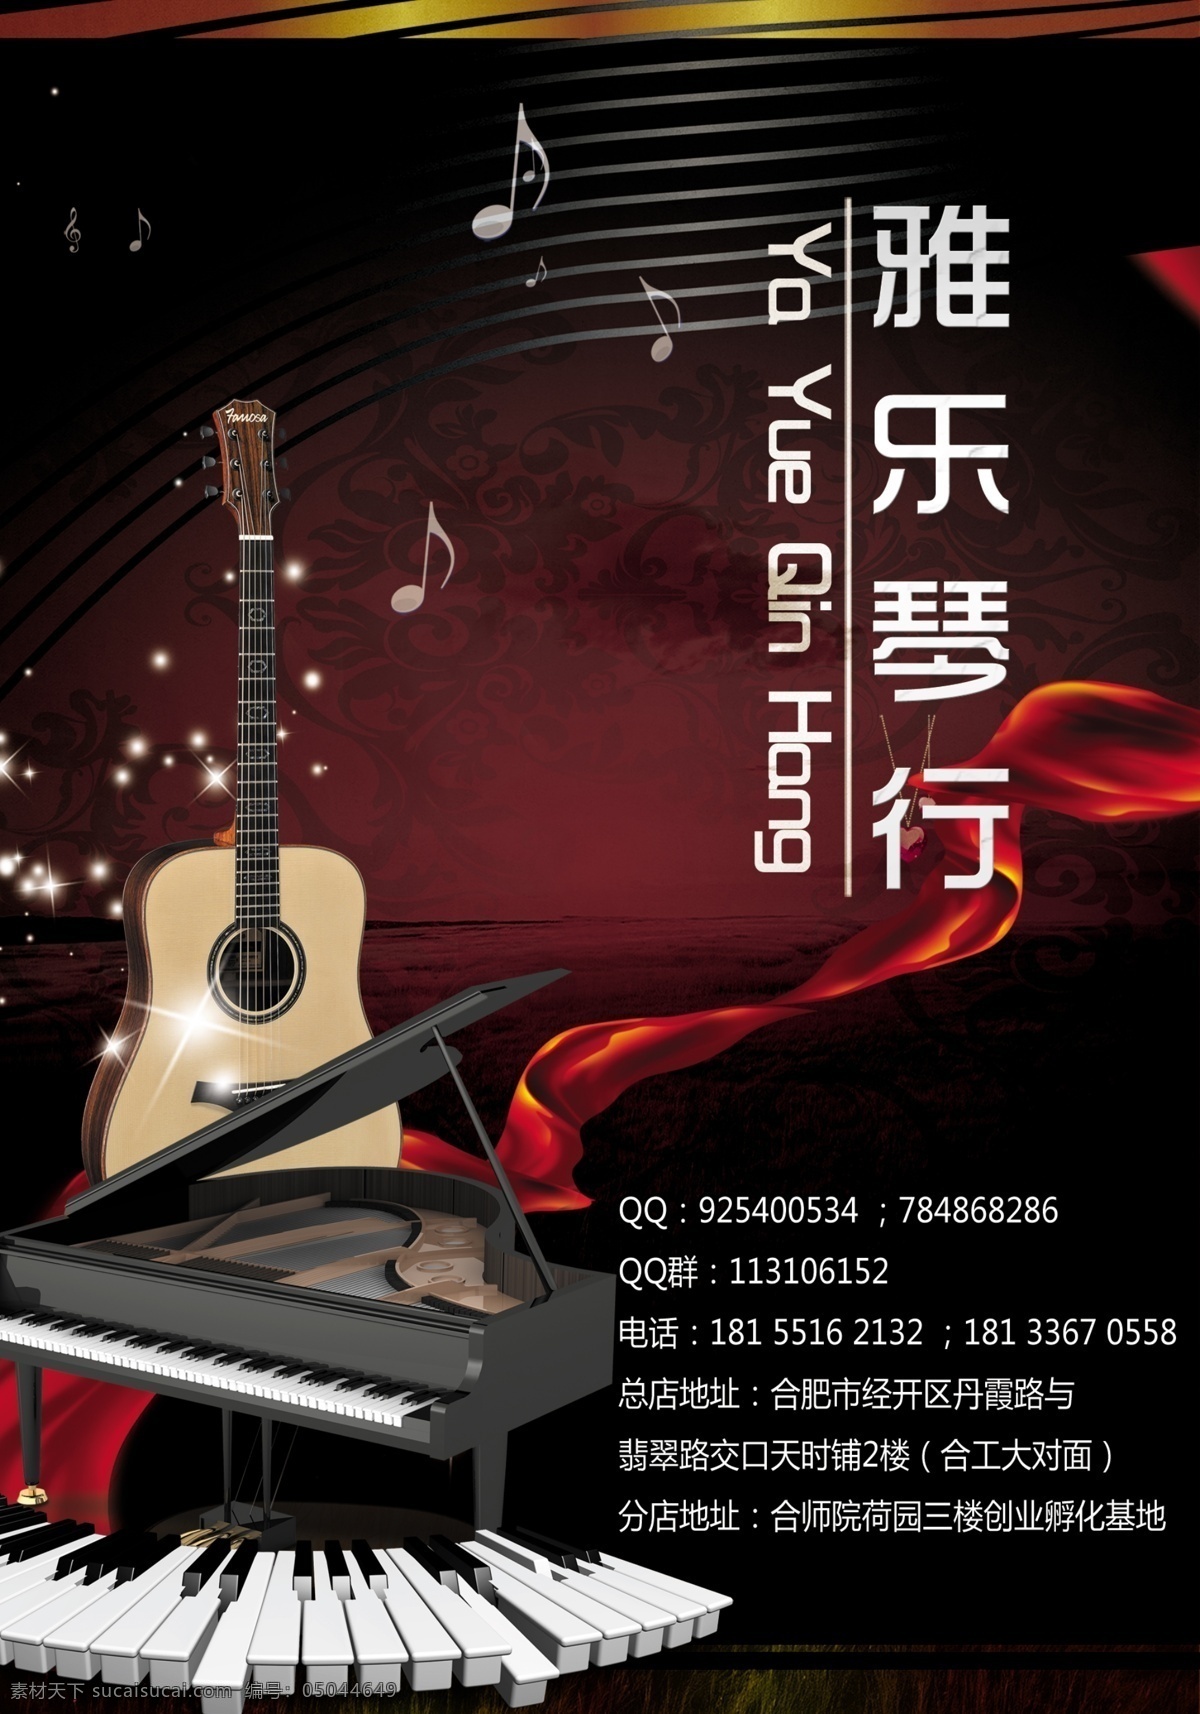 琴行宣传单 琴行 吉他 乐器培训 宣传单 千源文化 dm宣传单